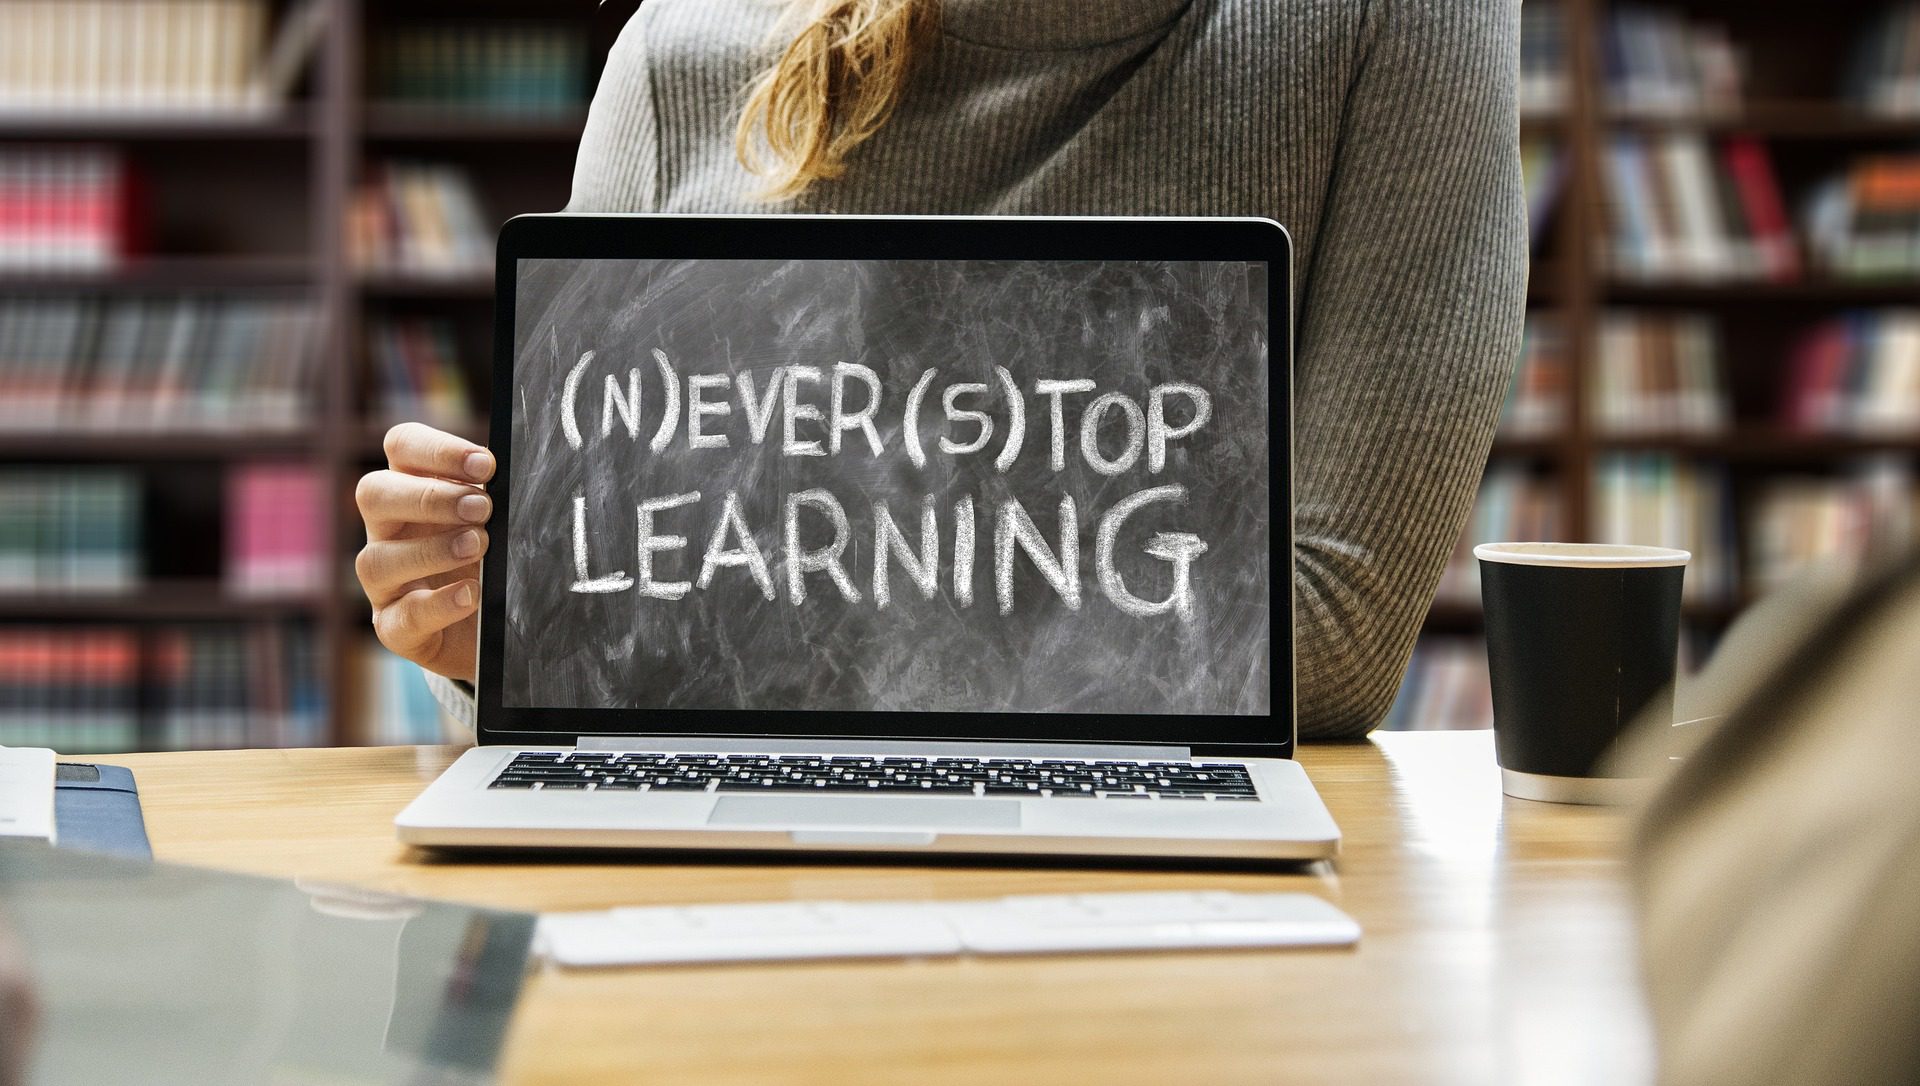 黒板に「Never Stop Learning」と書かれ、括弧内にNとSが書かれているようなノートパソコン